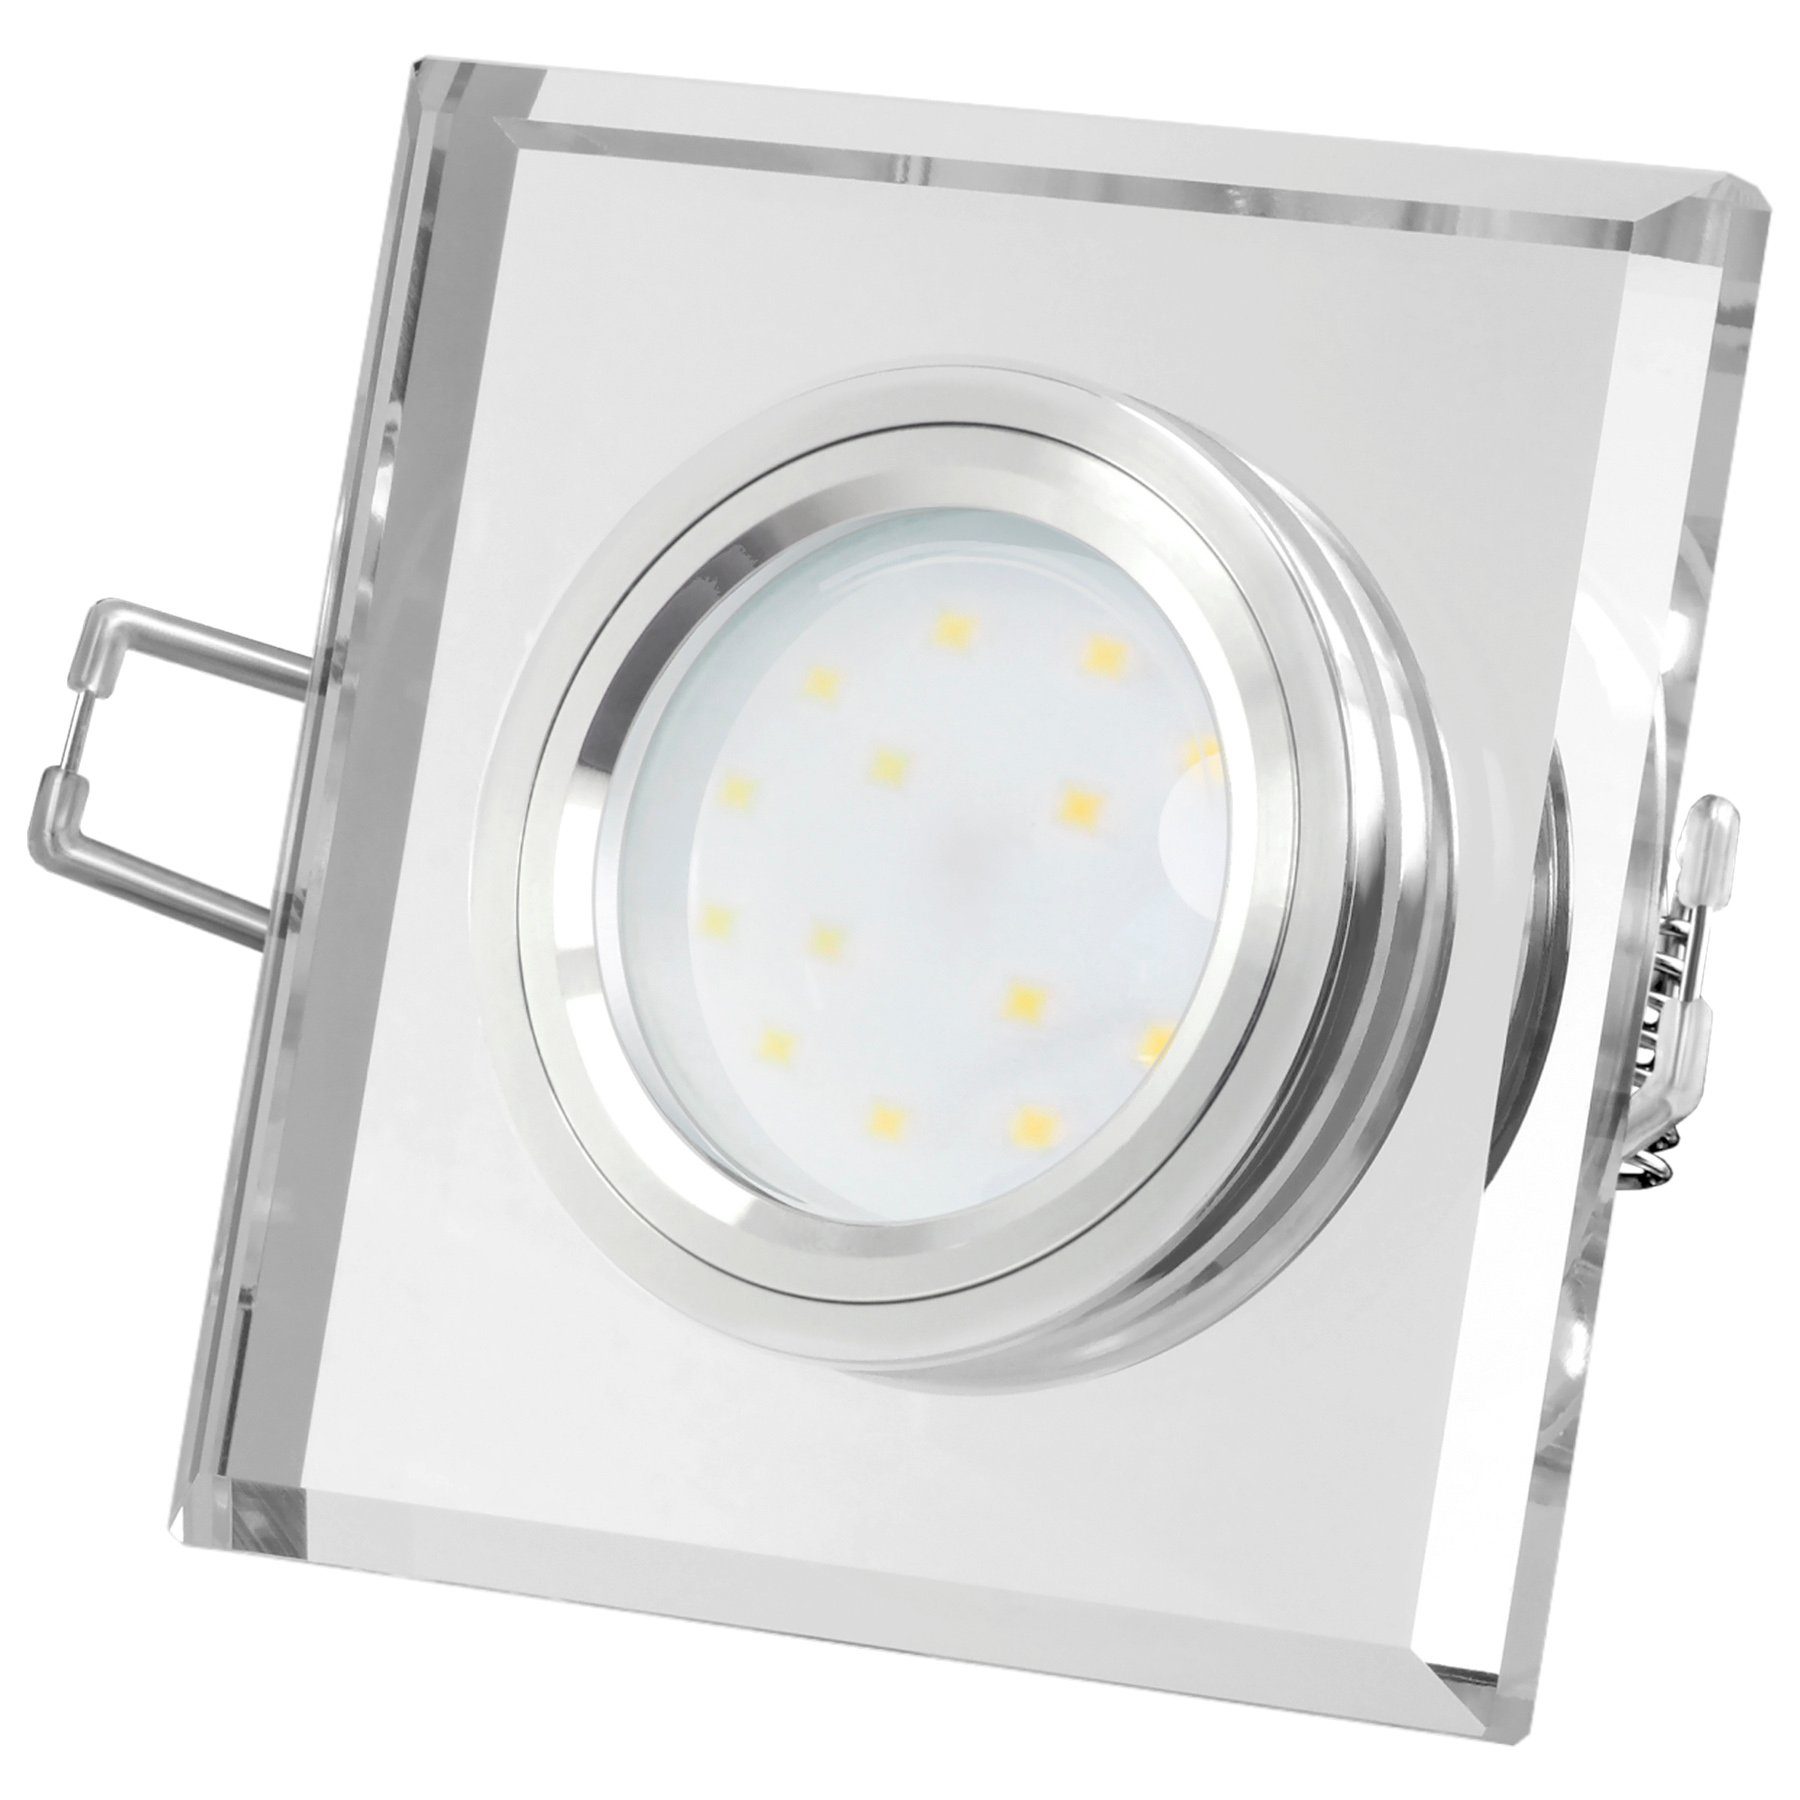 SSC-LUXon LED Einbaustrahler Flacher Design Einbaustrahler aus Glas quadratisch klar spiegelnd, Neutralweiß